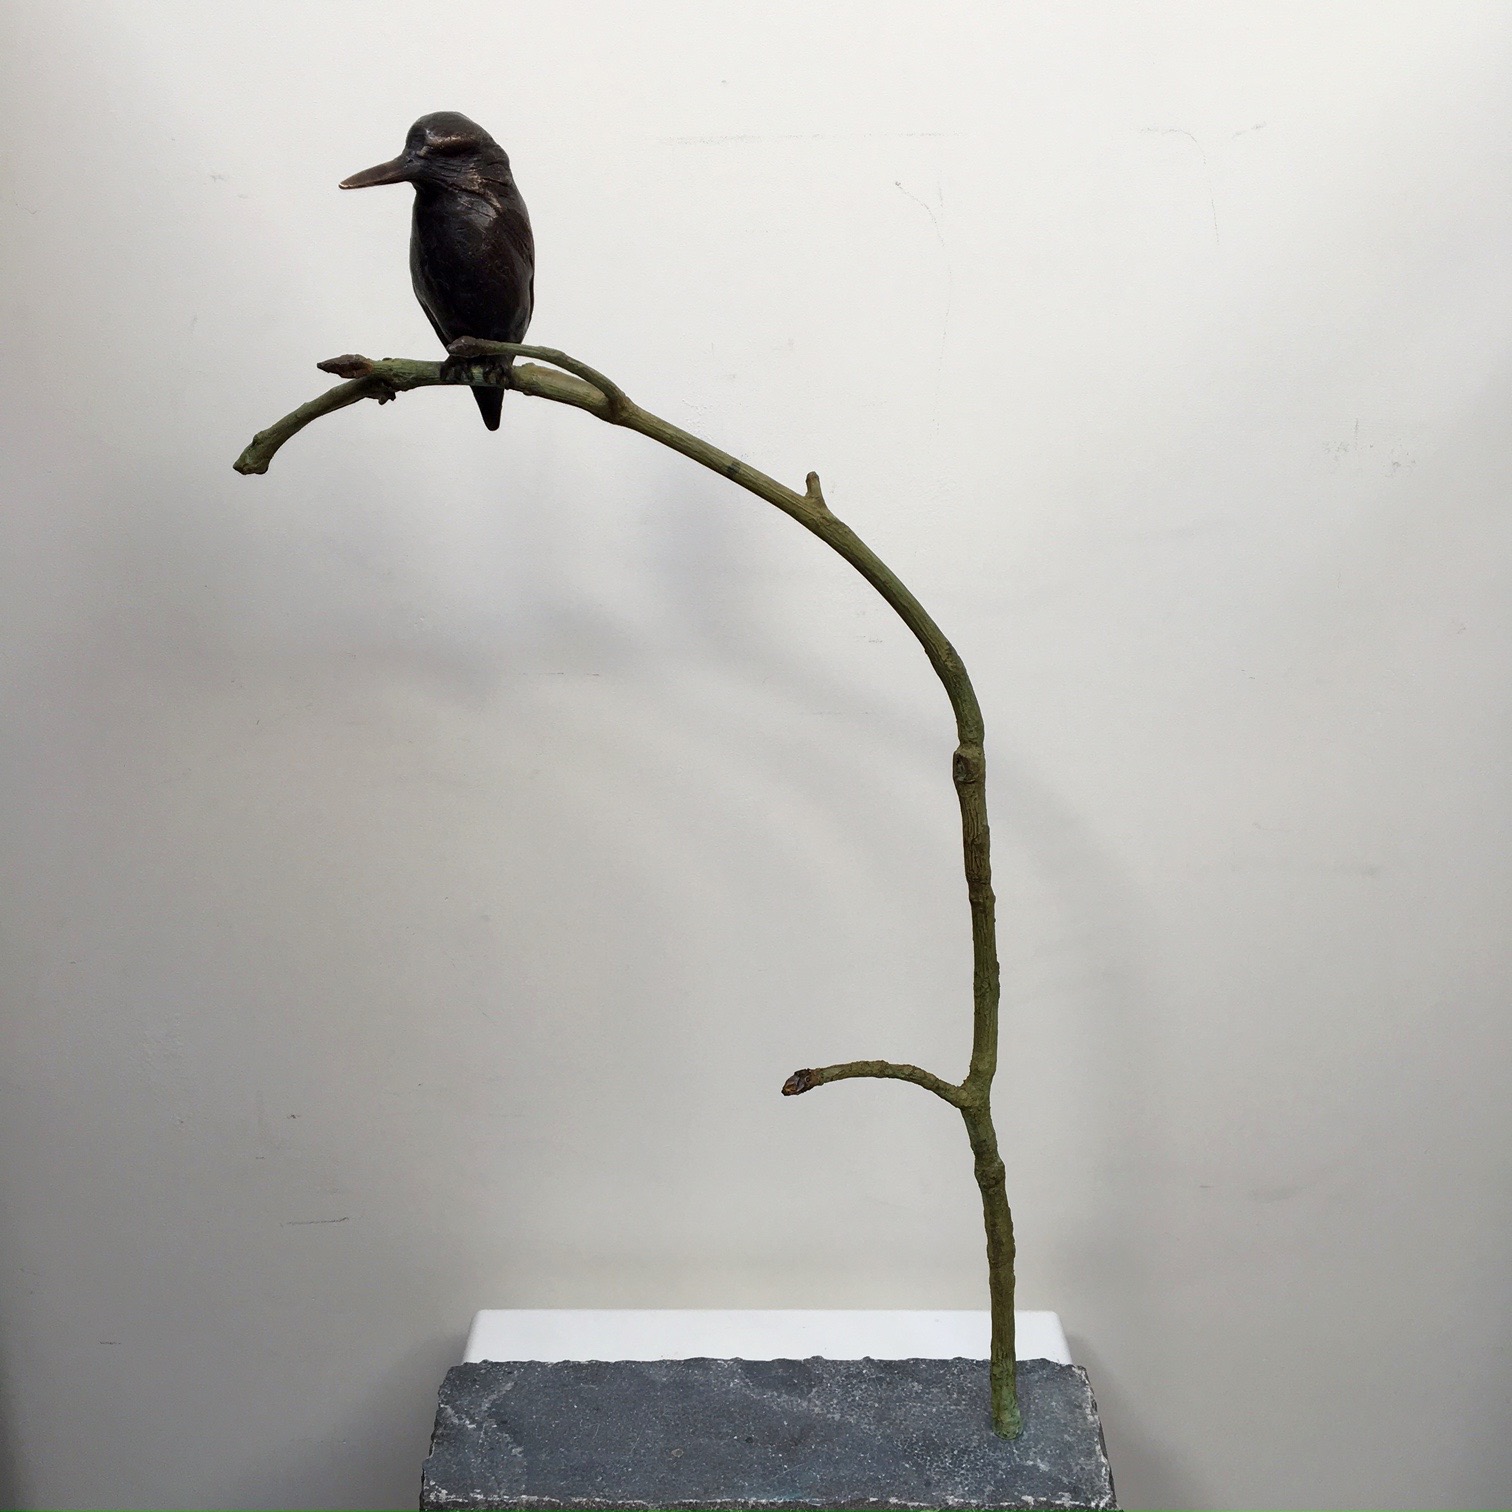 Momentum Fondsen Vuil Rob Nagtzaam bronzen beeld ' IJsvogel op tak ' Ook online te koop